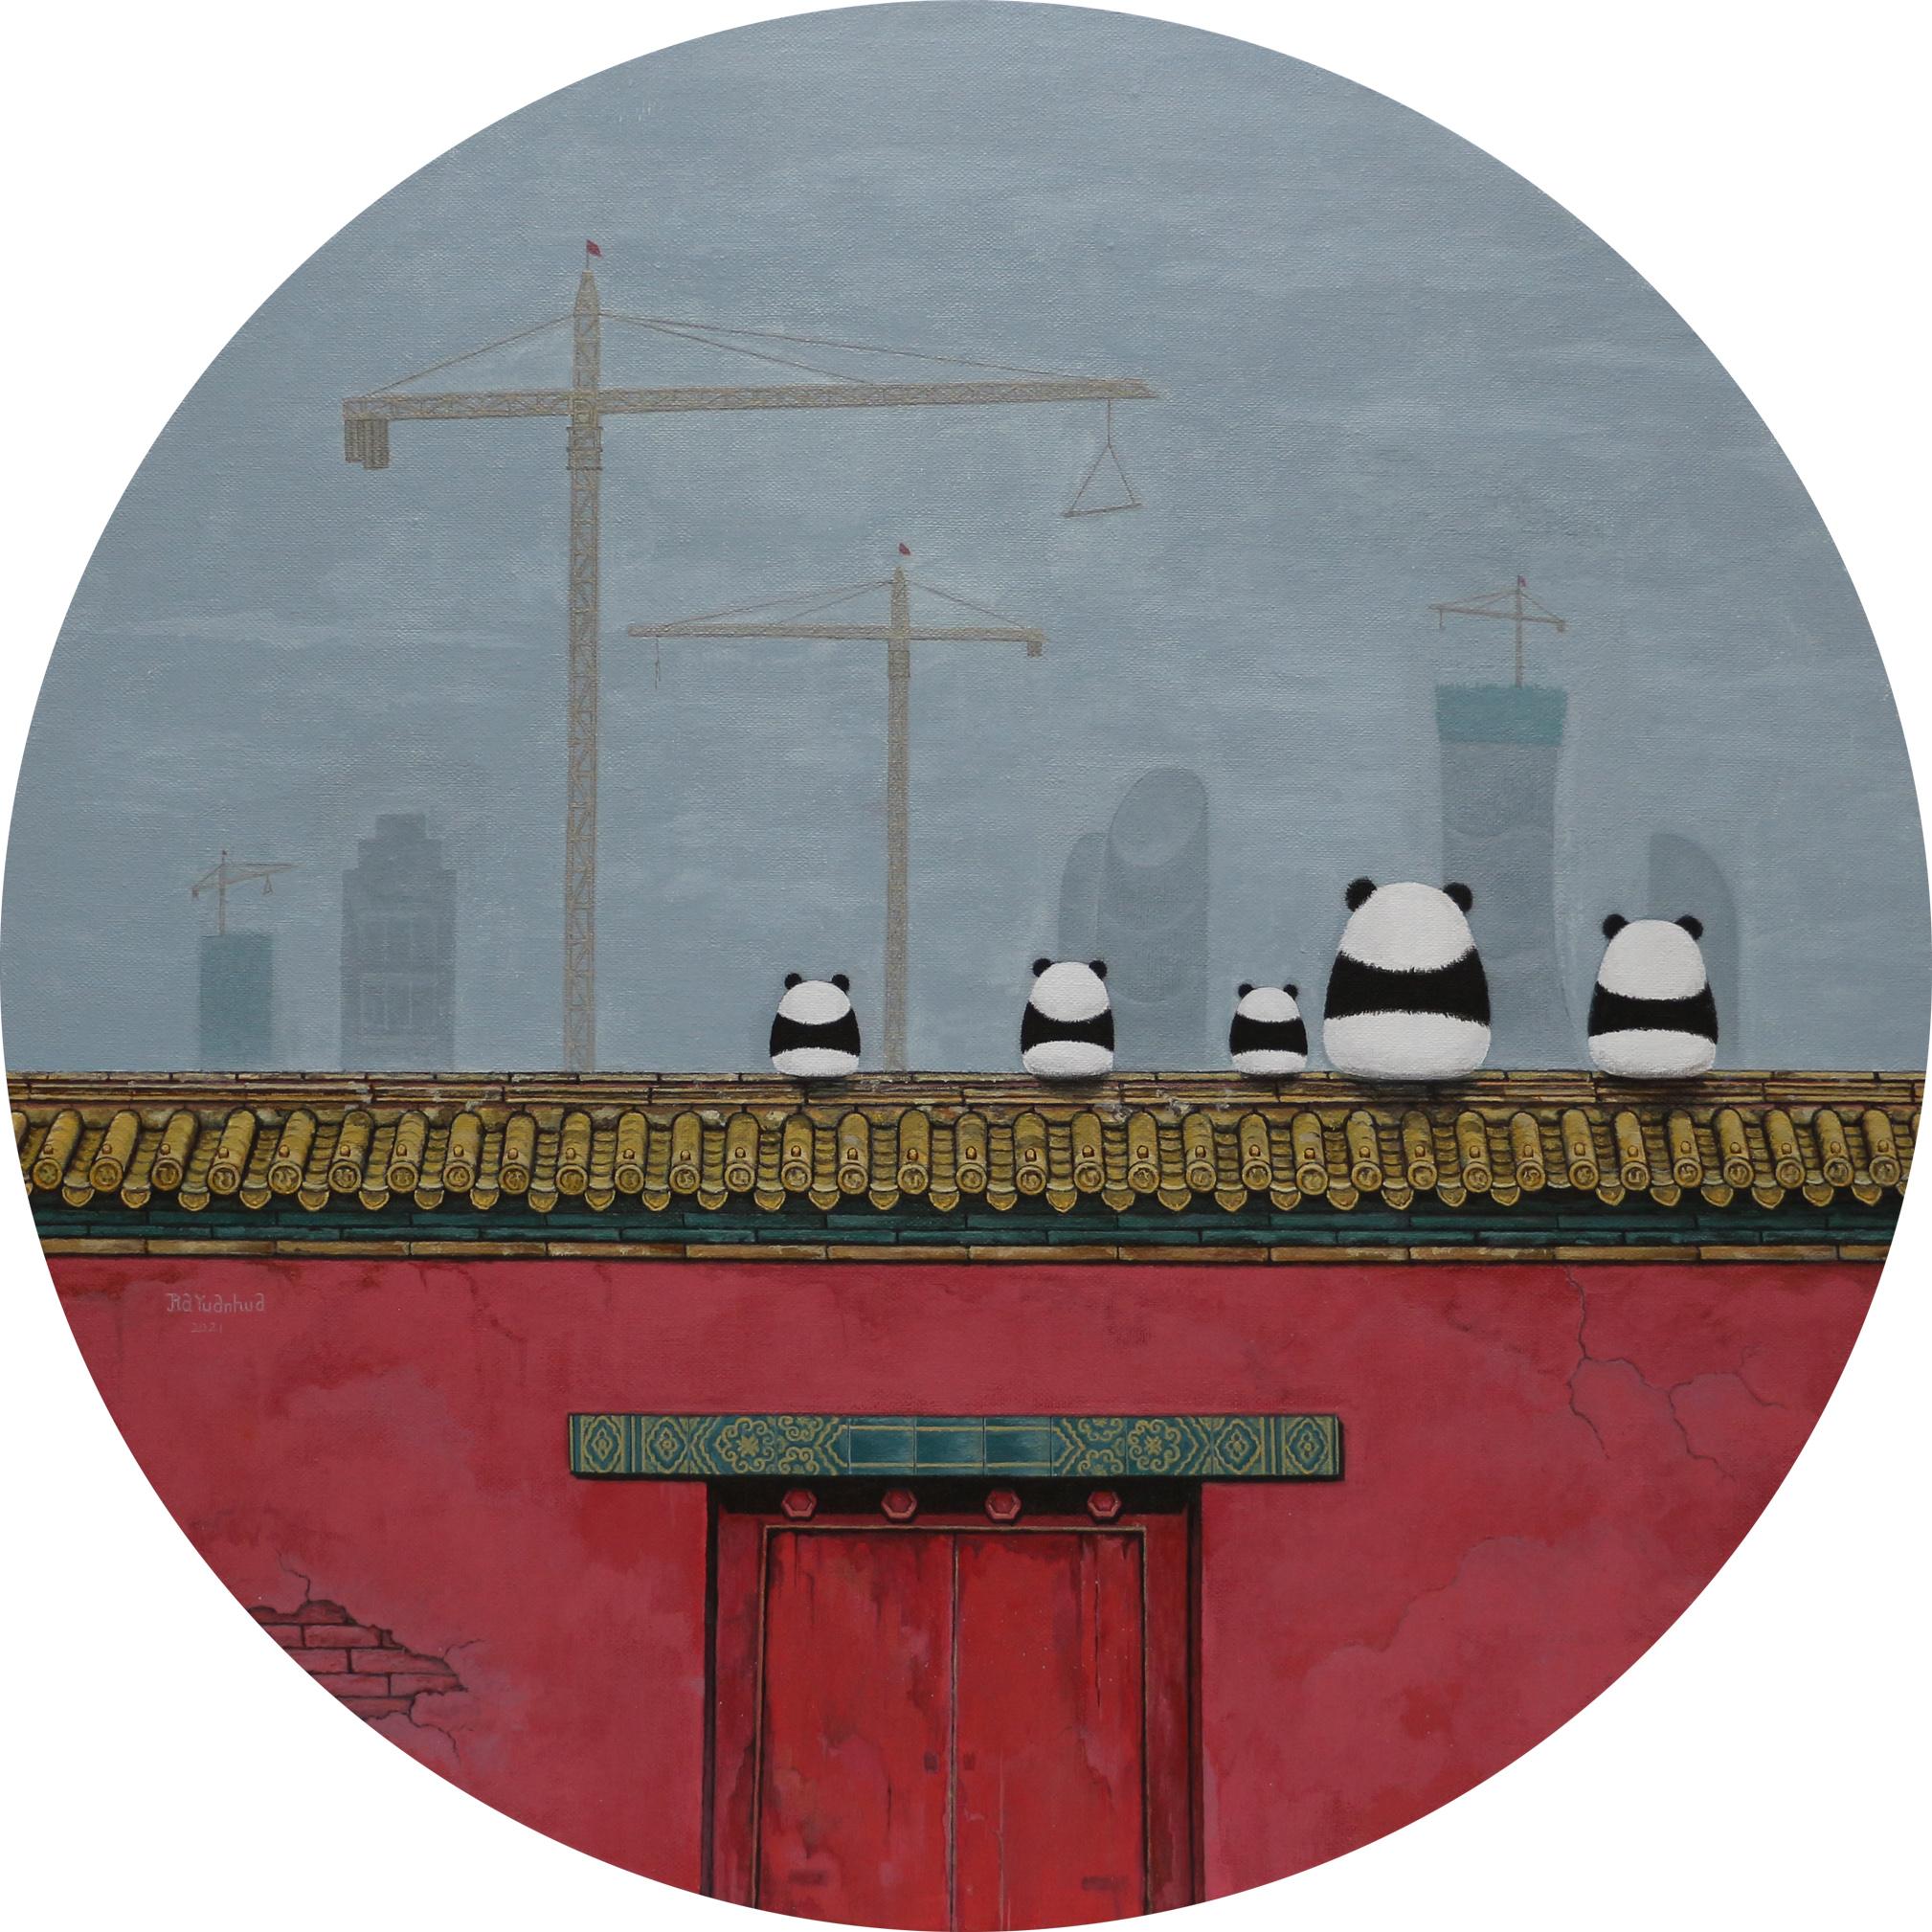 Acryl auf Leinwand

In China sind die Pandas sehr gut geschützt. Viele alte Gebäude werden abgerissen und durch Neubauten ersetzt. Historische alte Gebäude müssen geschützt werden, so wie wir Pandas schützen. 